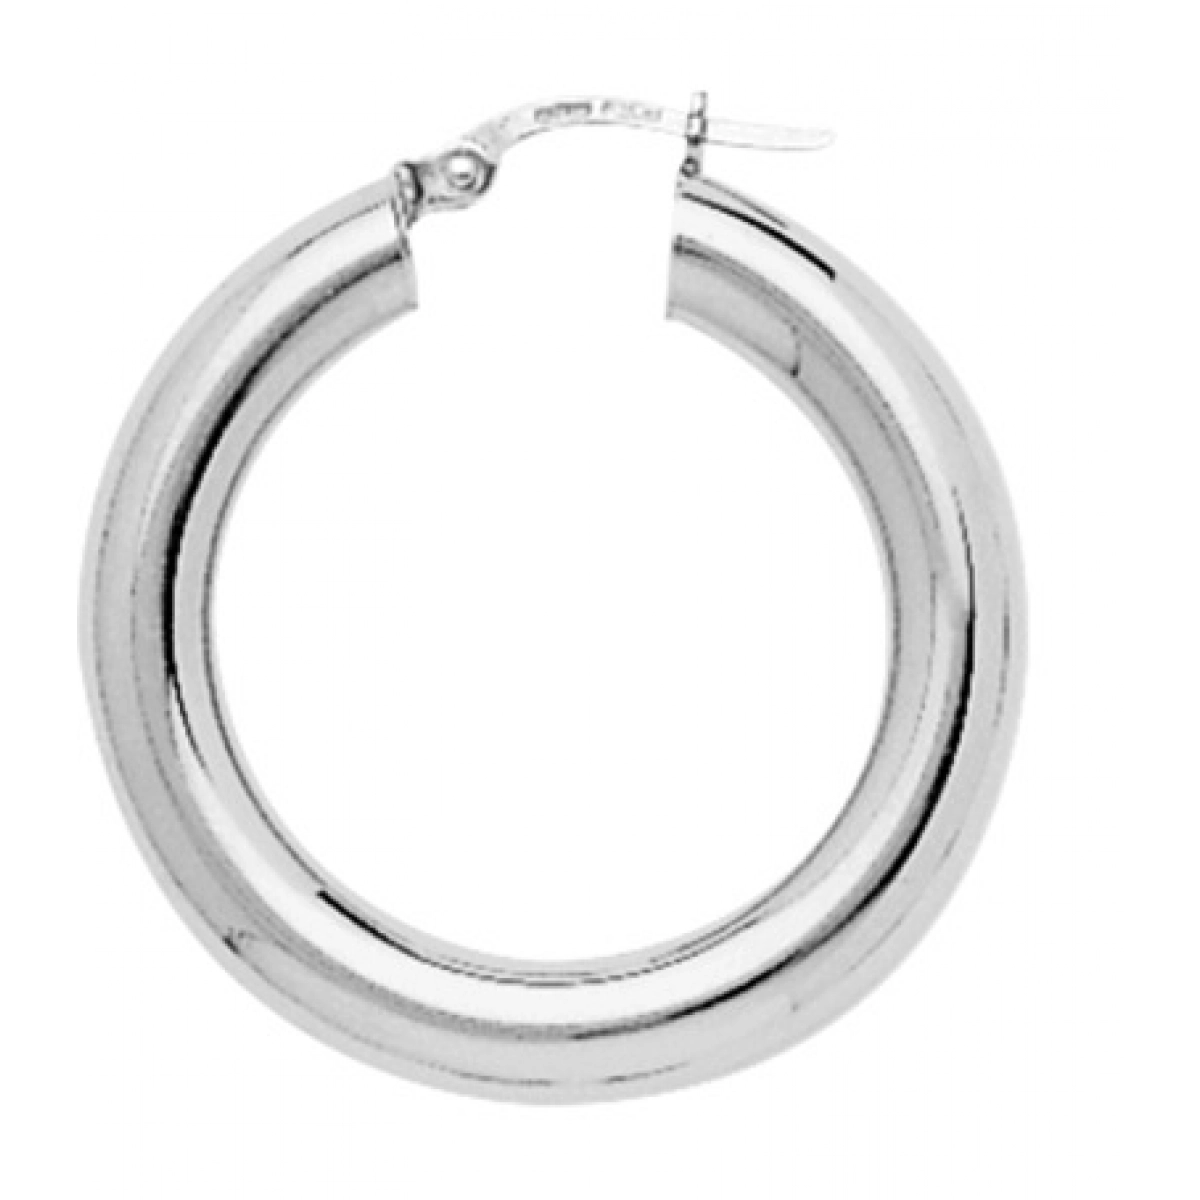 Hoops earrings pair 925 Silver Lua Blanca  235430.0